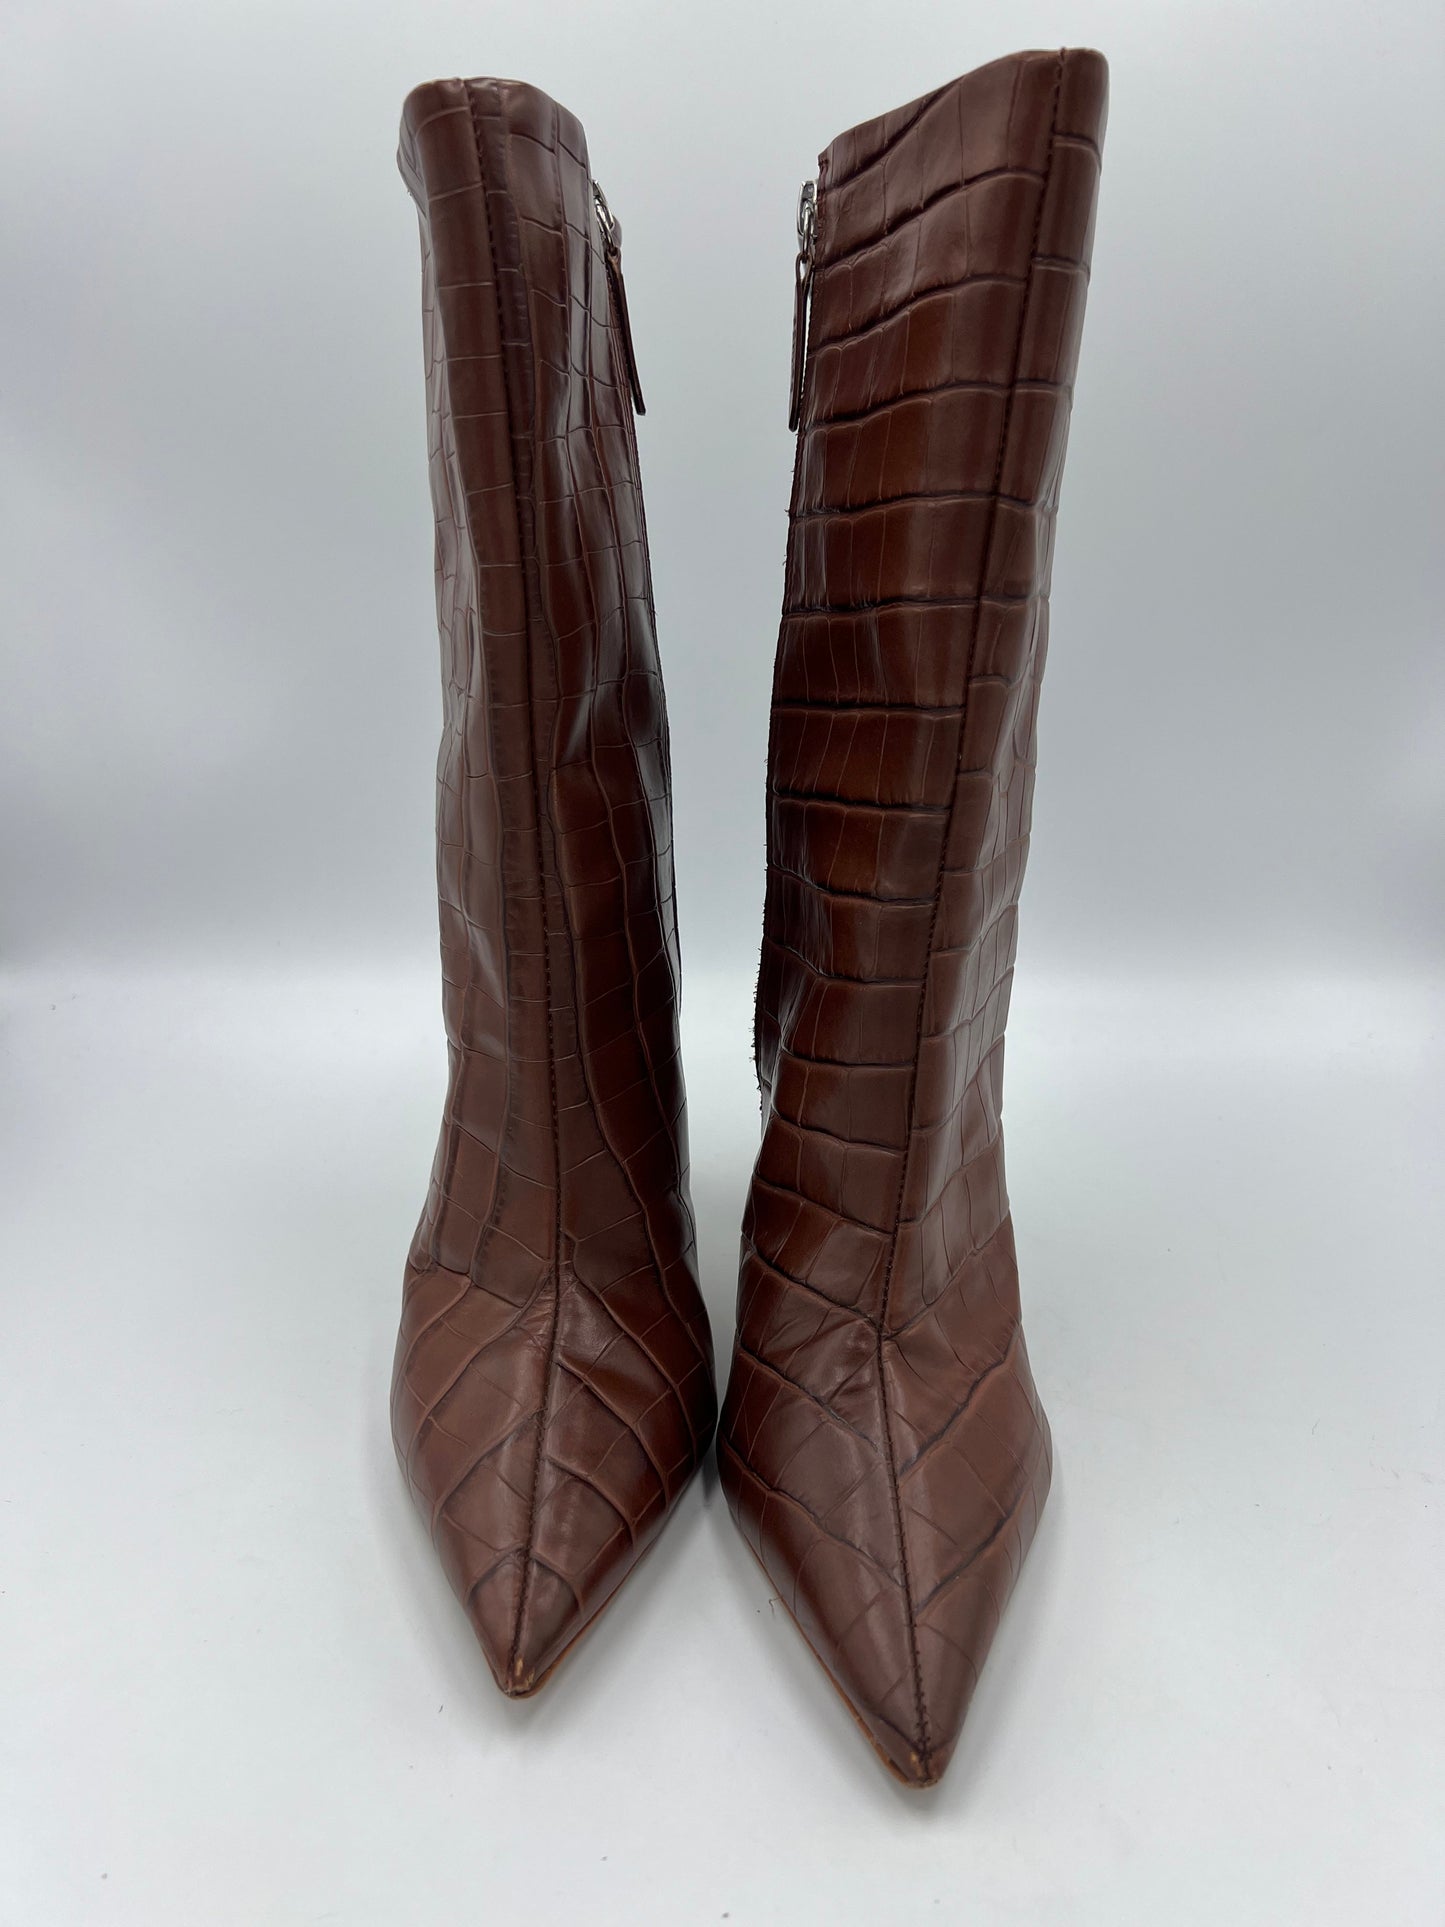 Boots Designer By Schutz  Size: 7.5